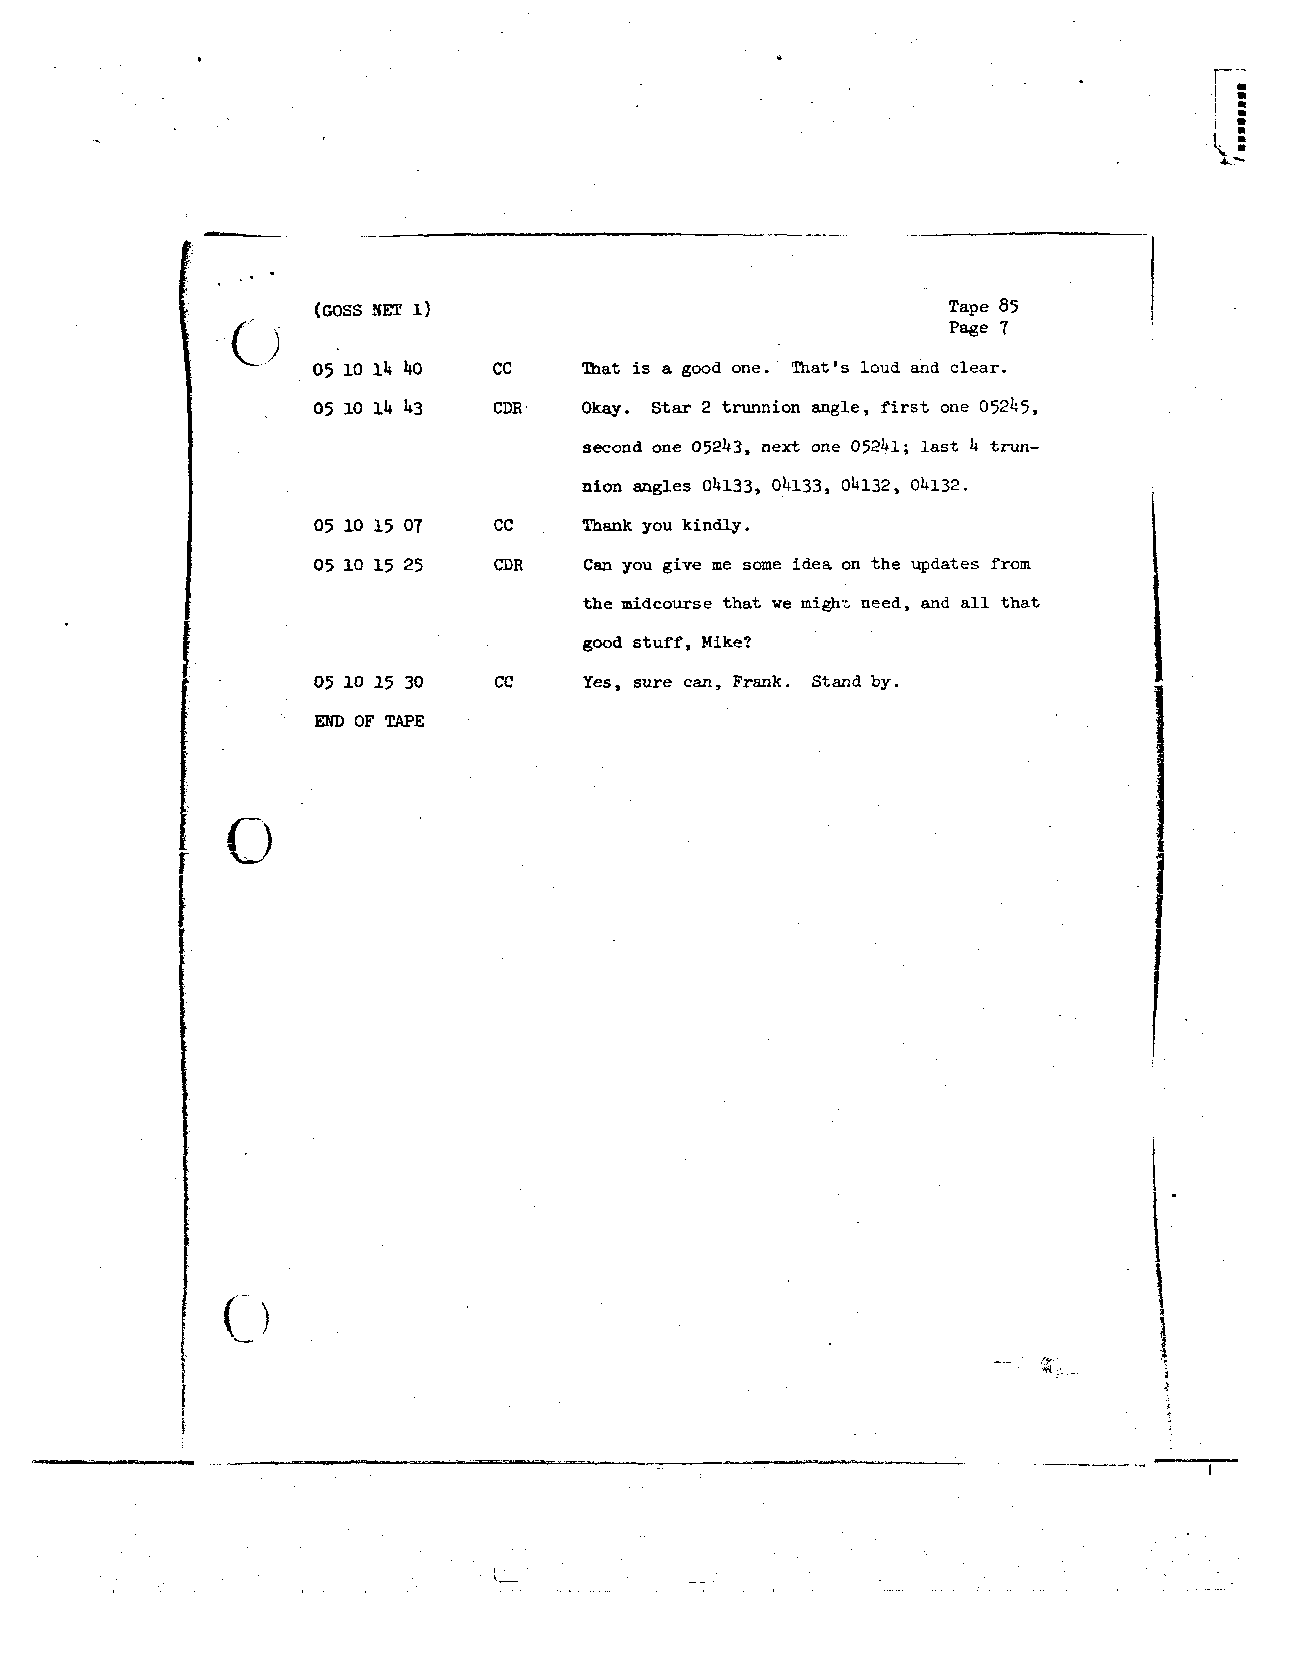 Page 708 of Apollo 8’s original transcript